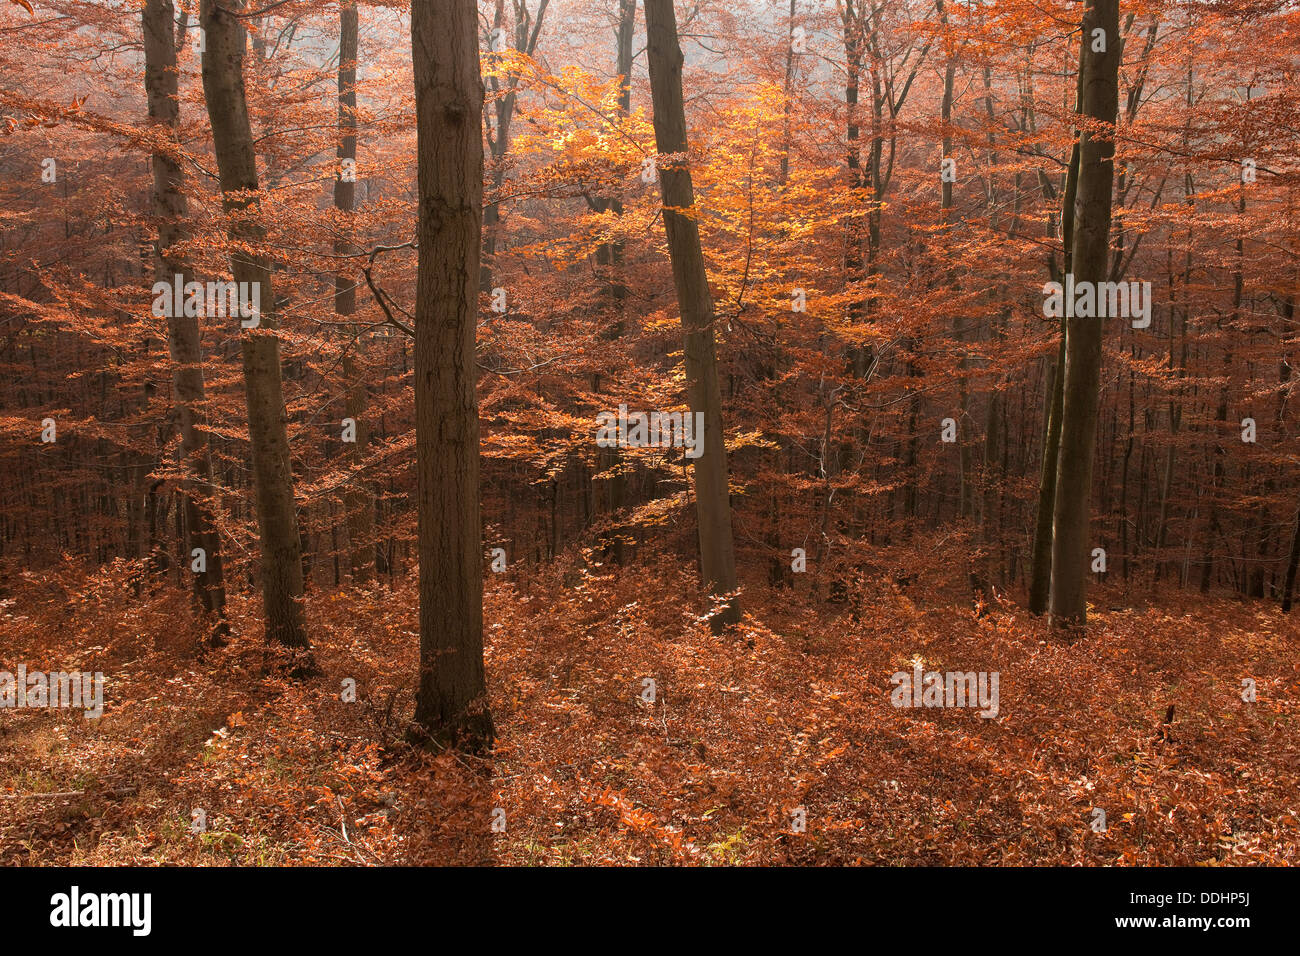 Autumnally coloured beech forest, European Beech or Common Beech (Fagus sylvatica) Stock Photo